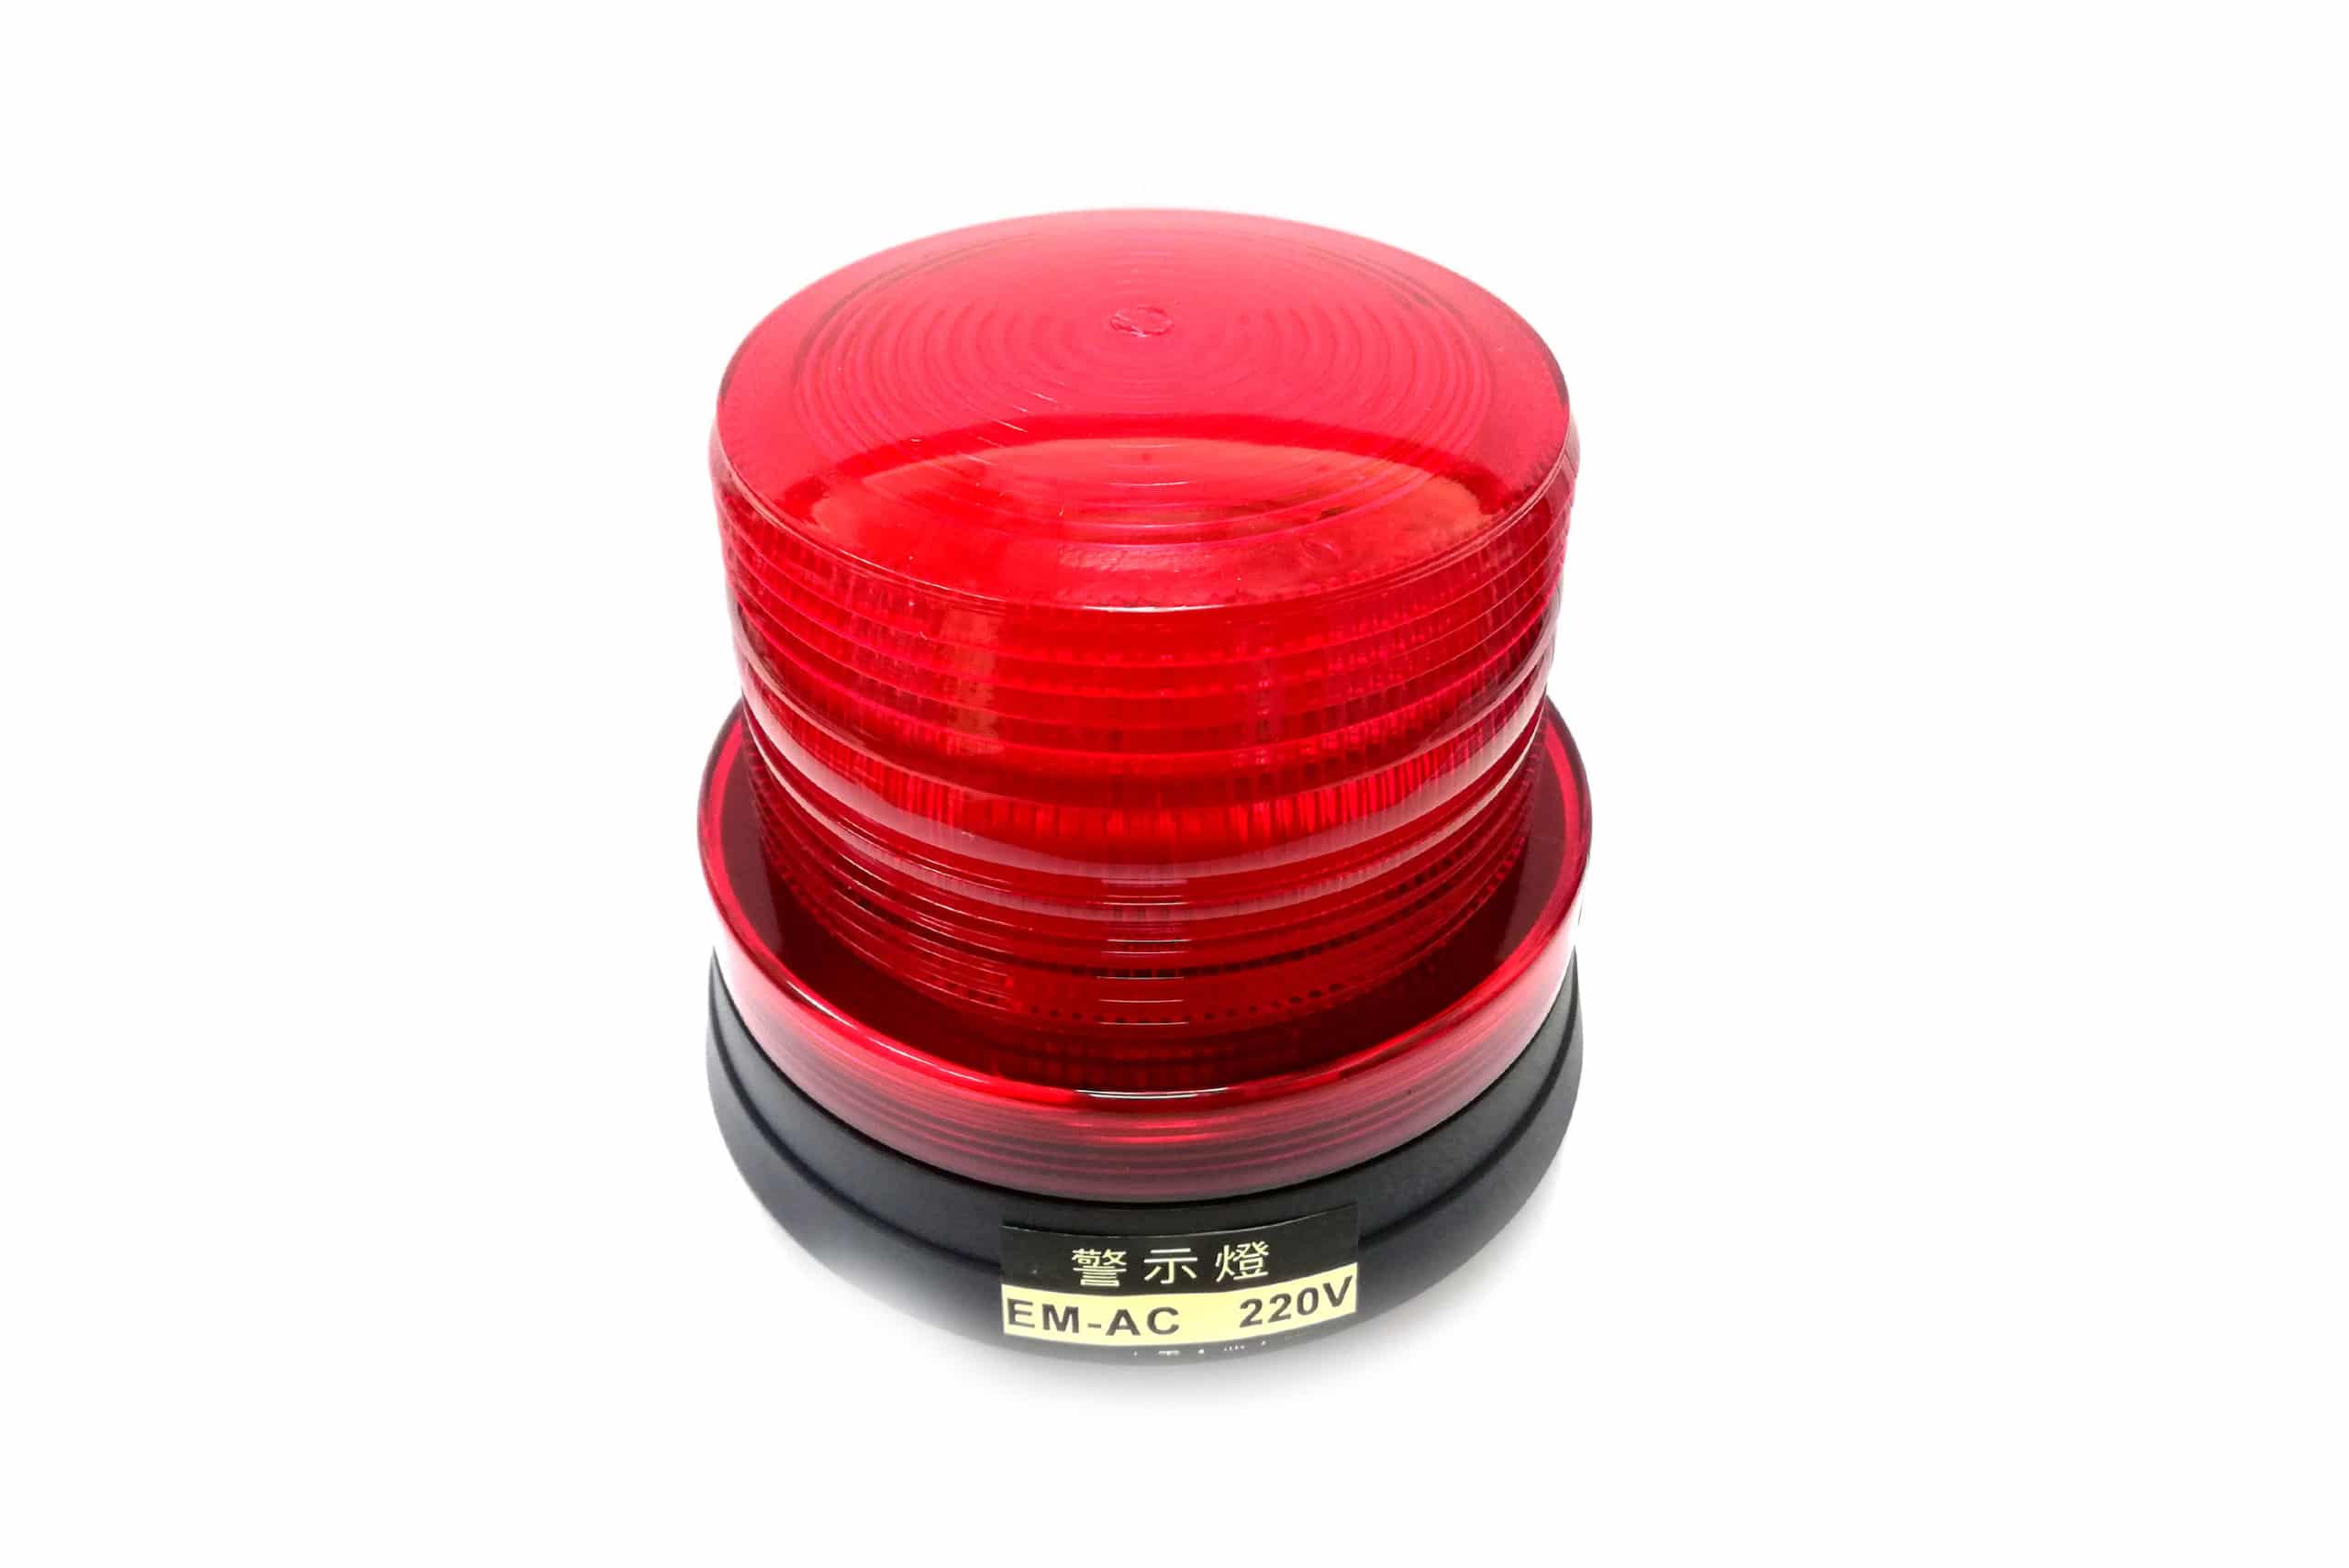 Red Warning Light LED Flashing Model: ACX-12 Auspicious